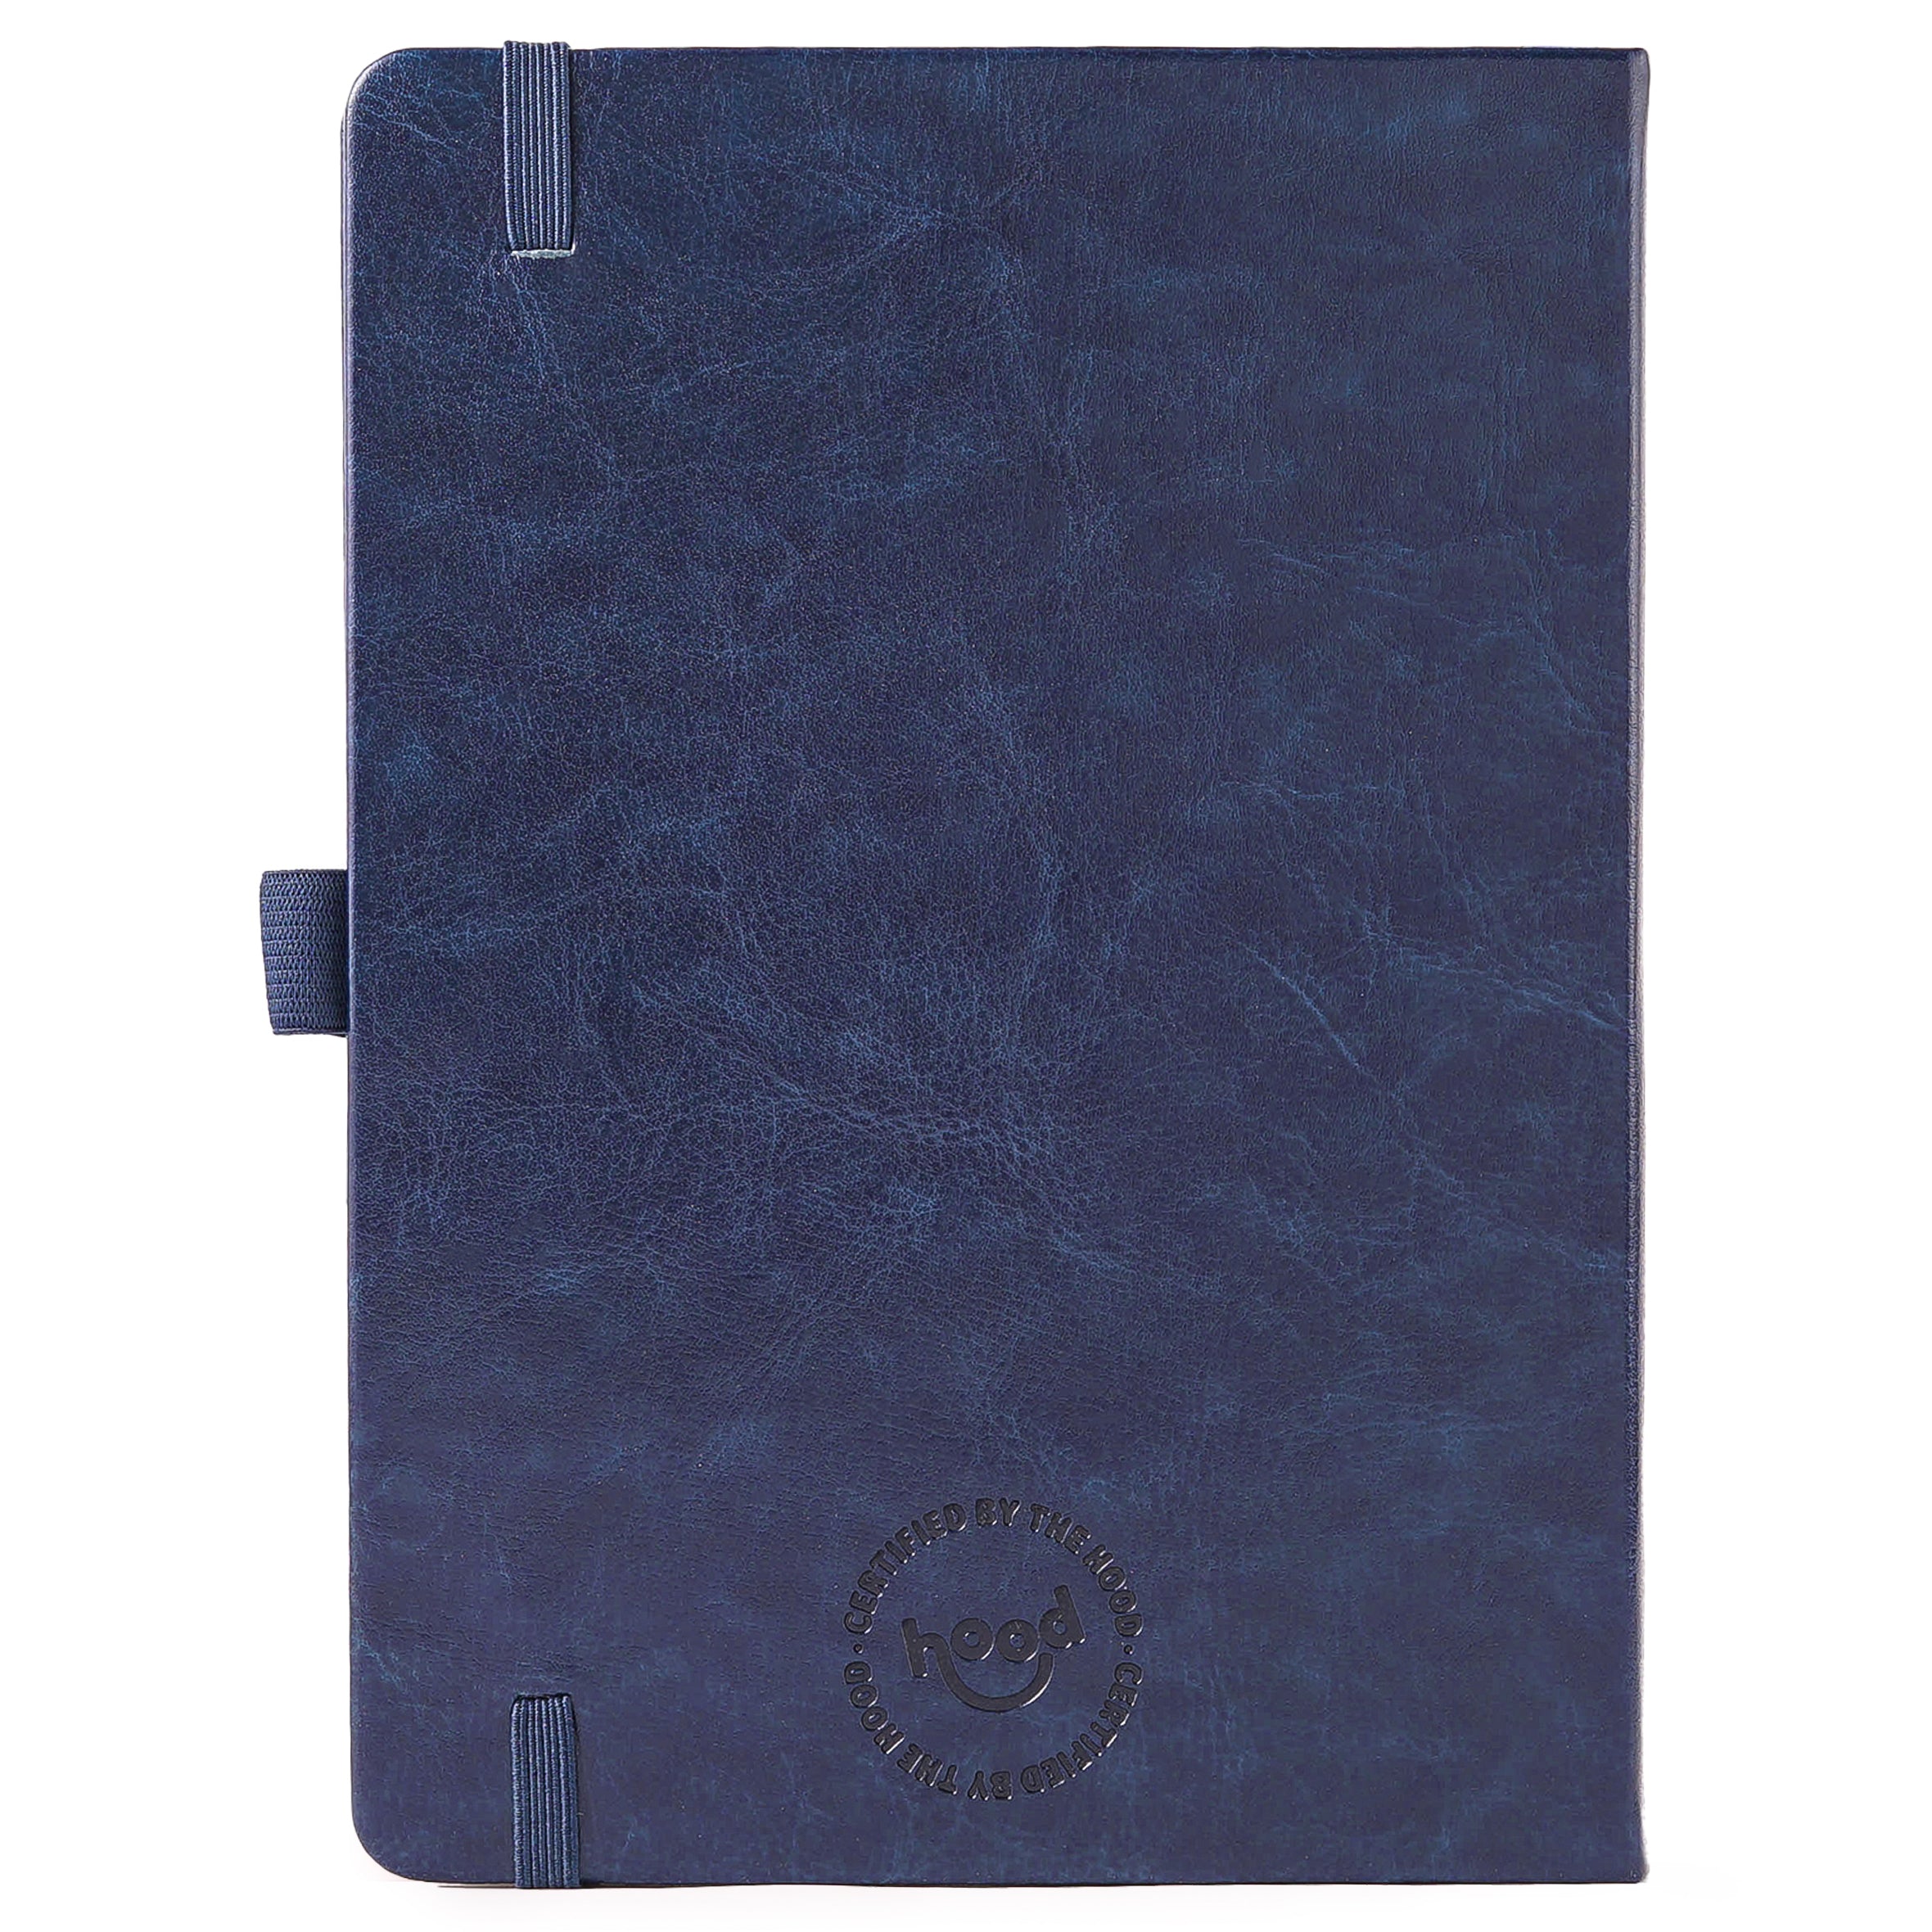 Big Tings Ah Gwarn Notebook - Navy Blue